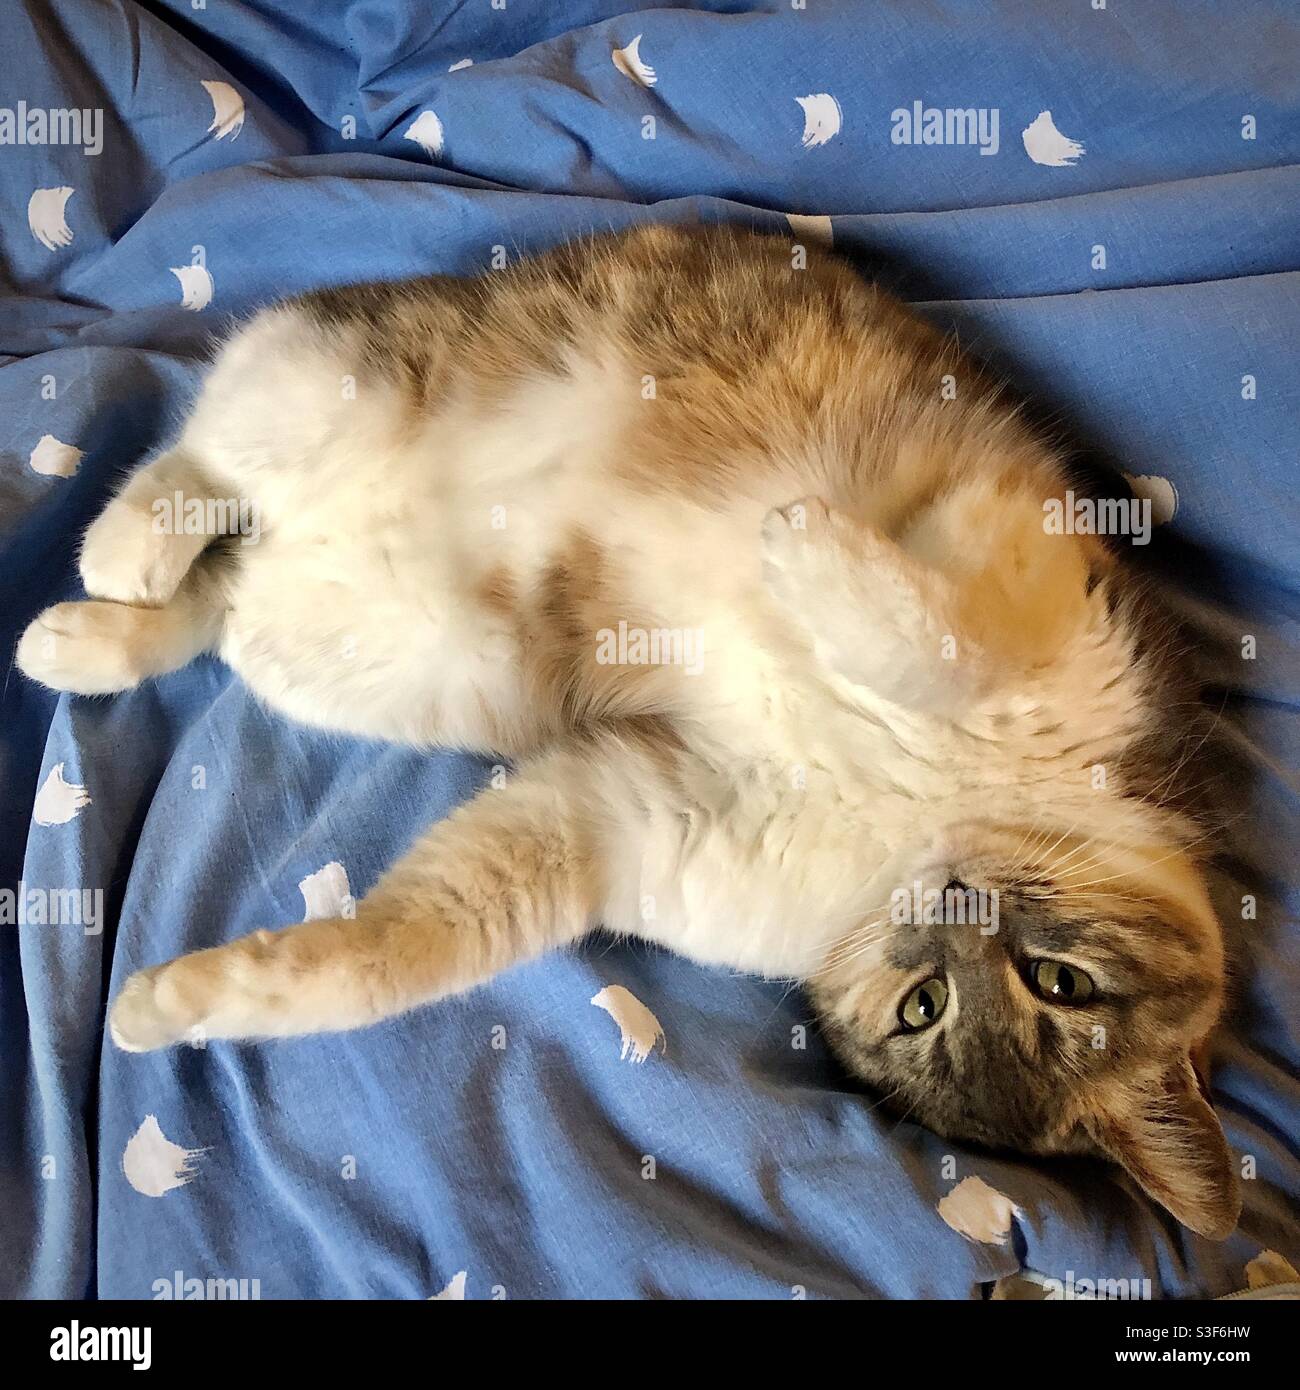 Cute gatto arricciato su una copertura del letto. Foto Stock